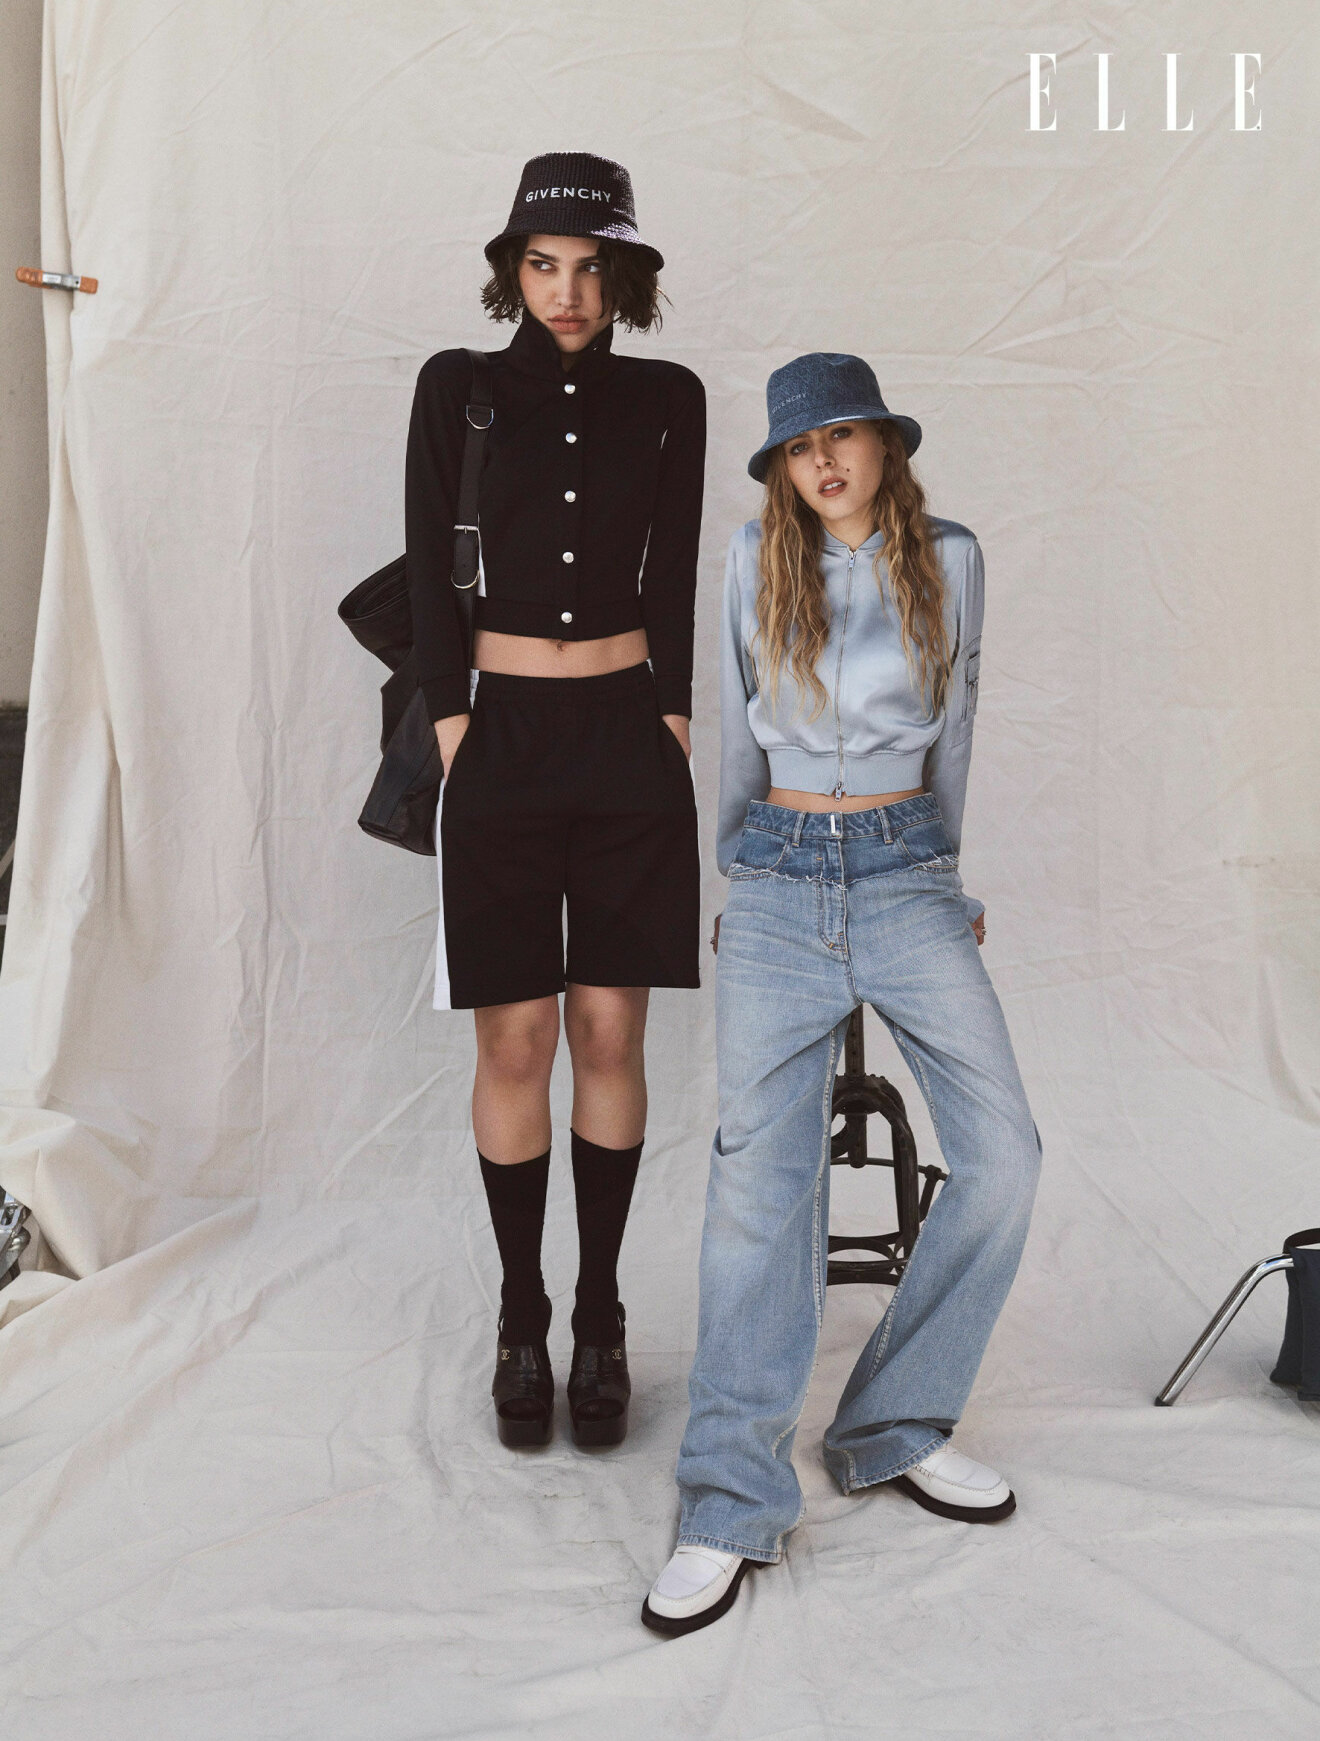 Modellen till vänster har på sig svart jacka, shorts och hatt, allt från Givenchy. Modellen till höger har på sig ljusblå jacka, blåa jeans och hatt i denim, allt från Givenchy.